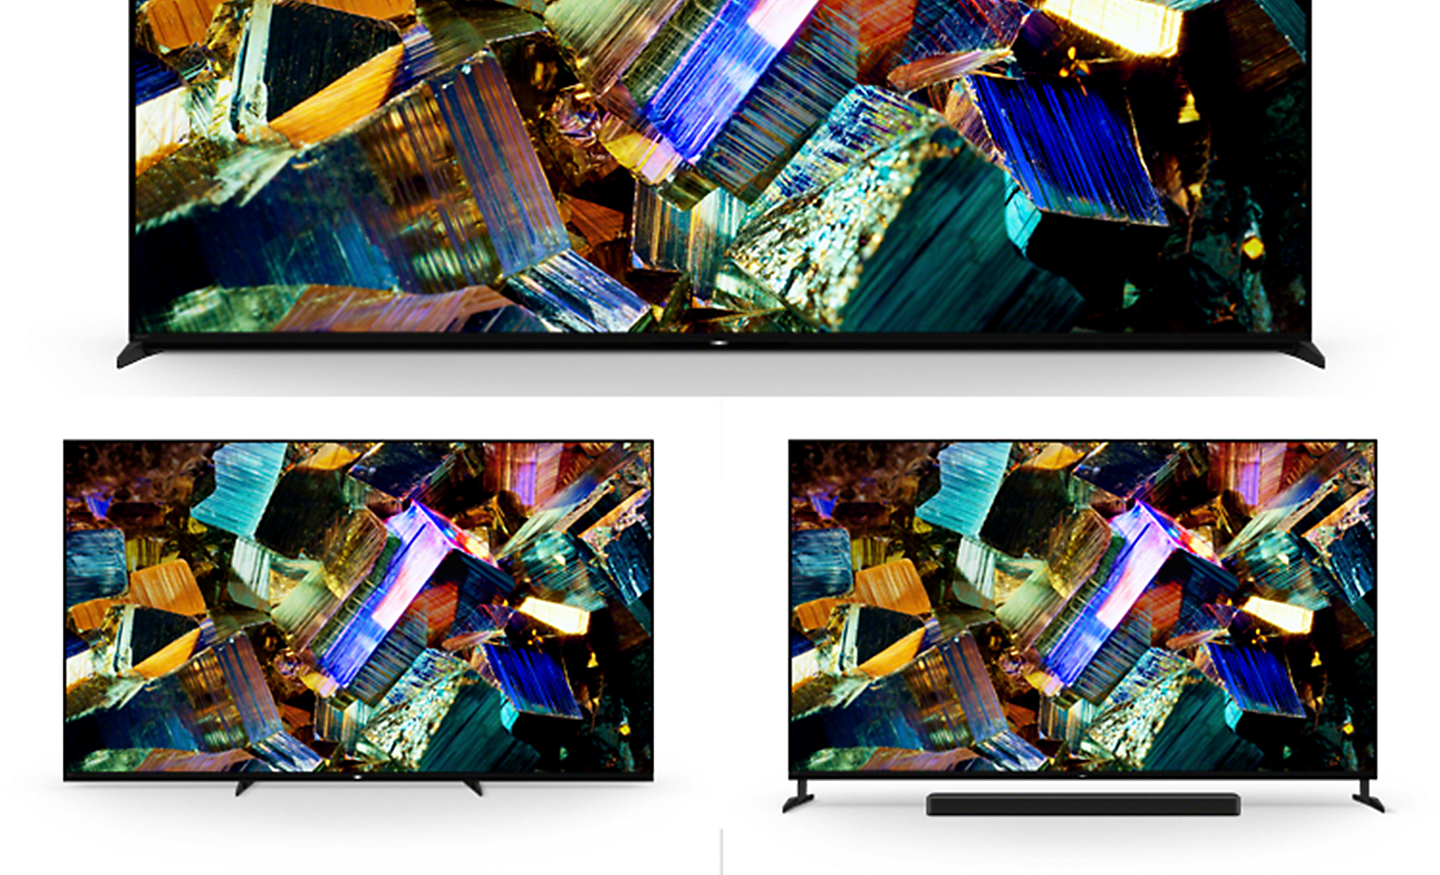 صورة لثلاثة تلفزيونات BRAVIA من السلسلة Z9K تعرض الحامل في وضع ضبط قياسي وضبط ضيق وضبط السماعات الشريطية ولقطات شاشة لصناديق رقائق ملونة